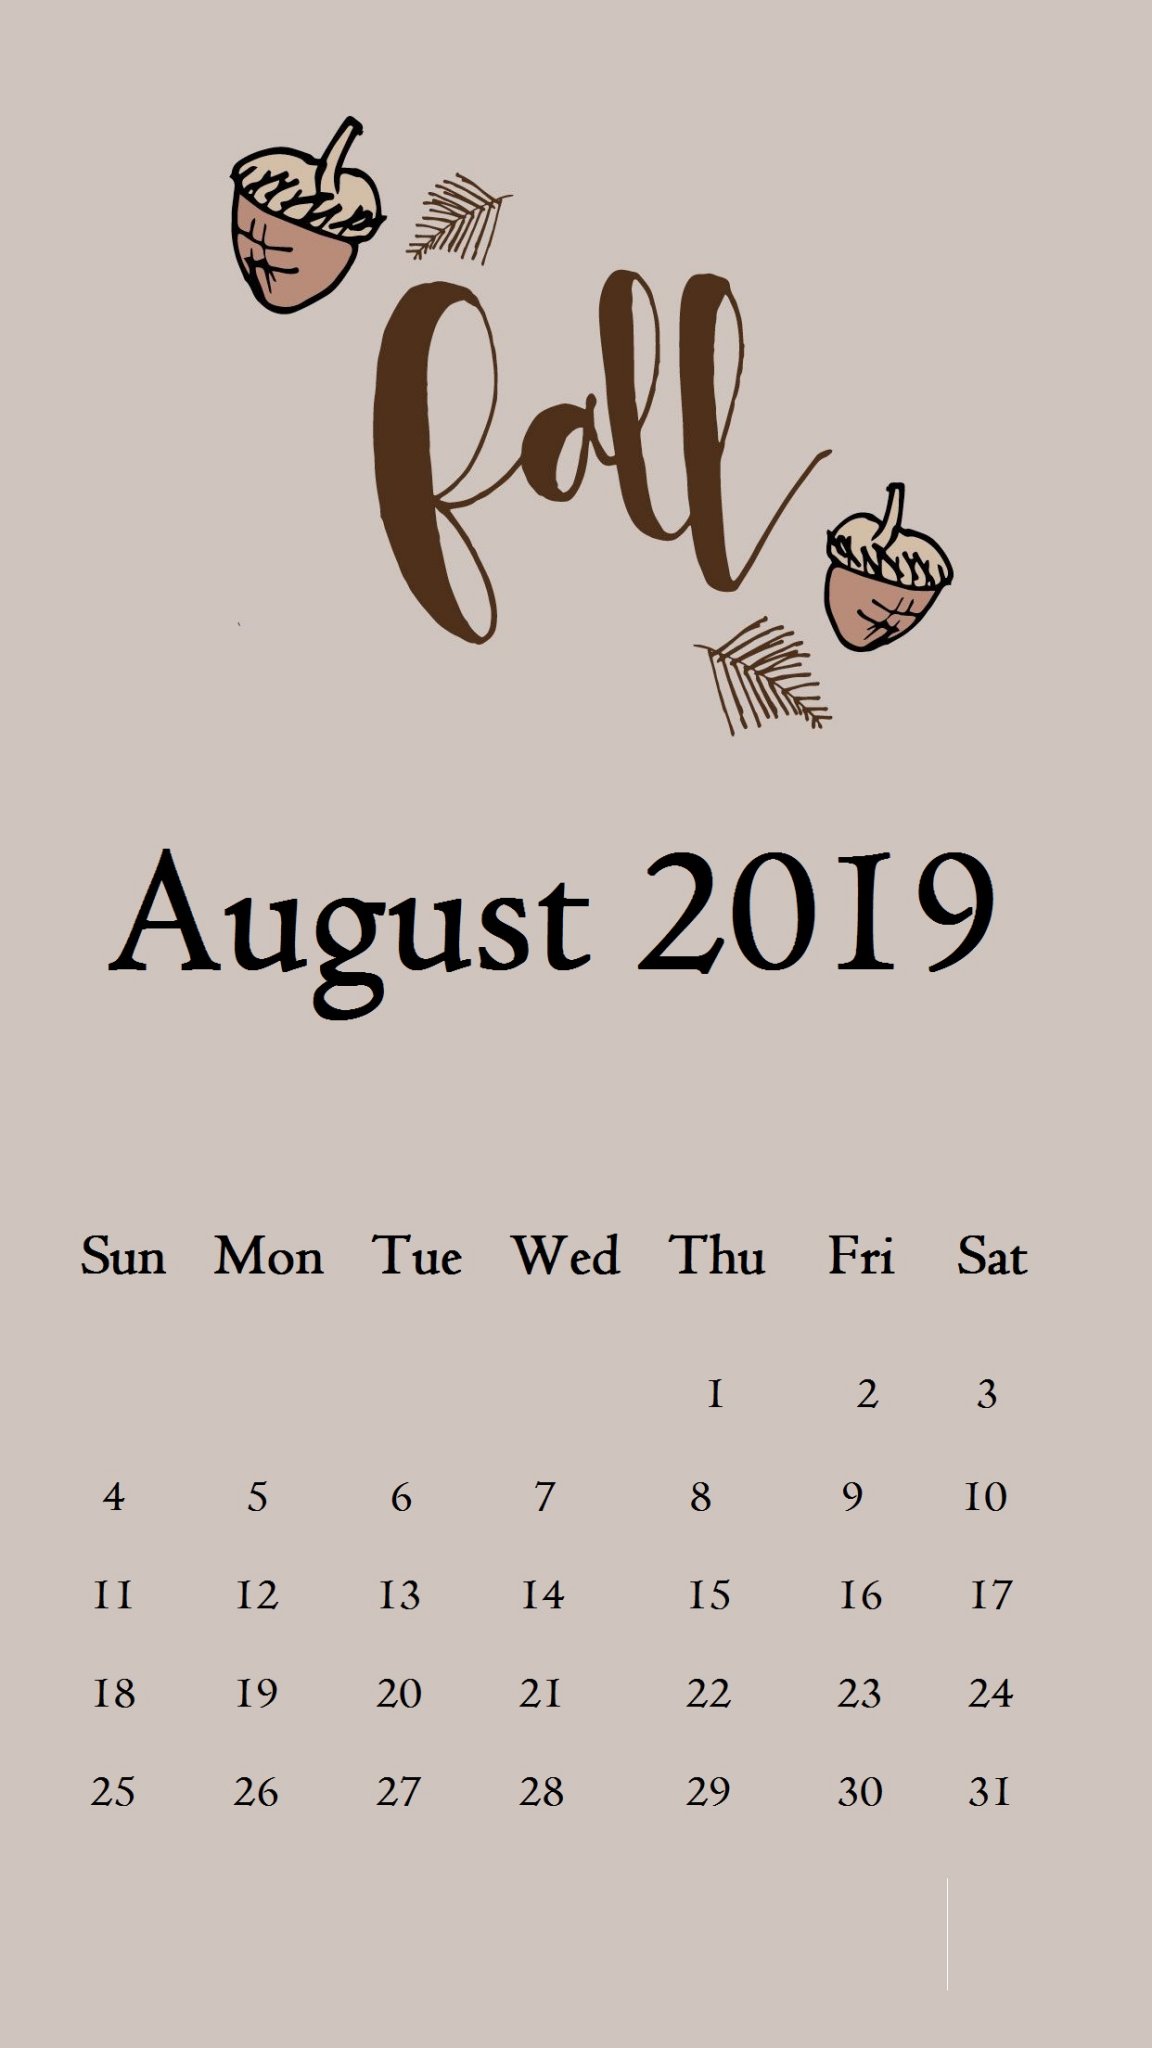 August 2019 iPhone Calendar Wallpaper